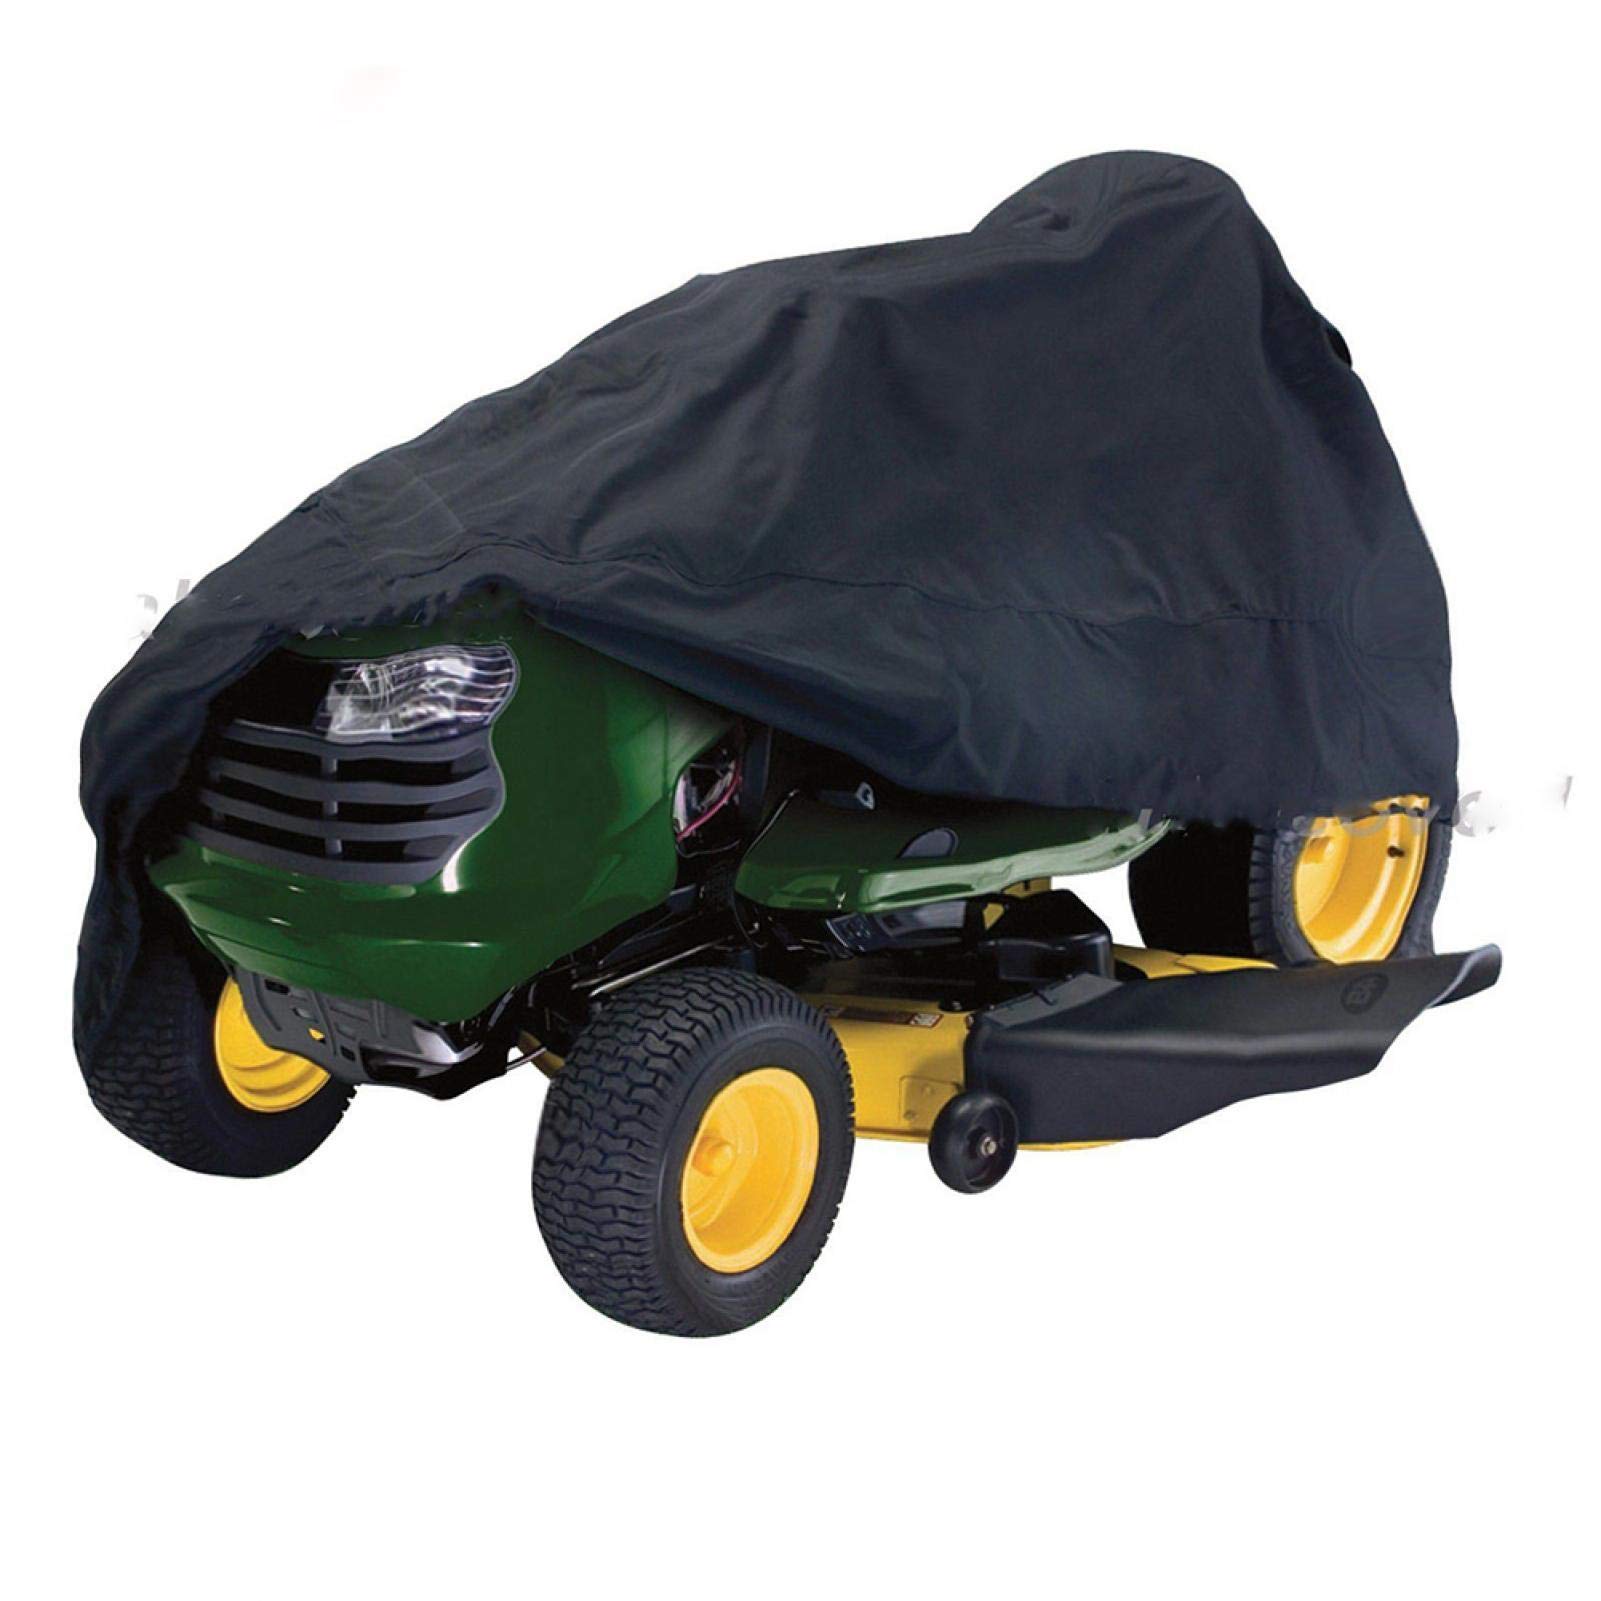 QOTSTEOS Abdeckung für Rasenmäher, 210D Oxford-Gewebe, Traktor-Frontverkleidung, Schutzhülle, wasserdicht, UV-Schutz, für den Garten im Freien (Größe: M)